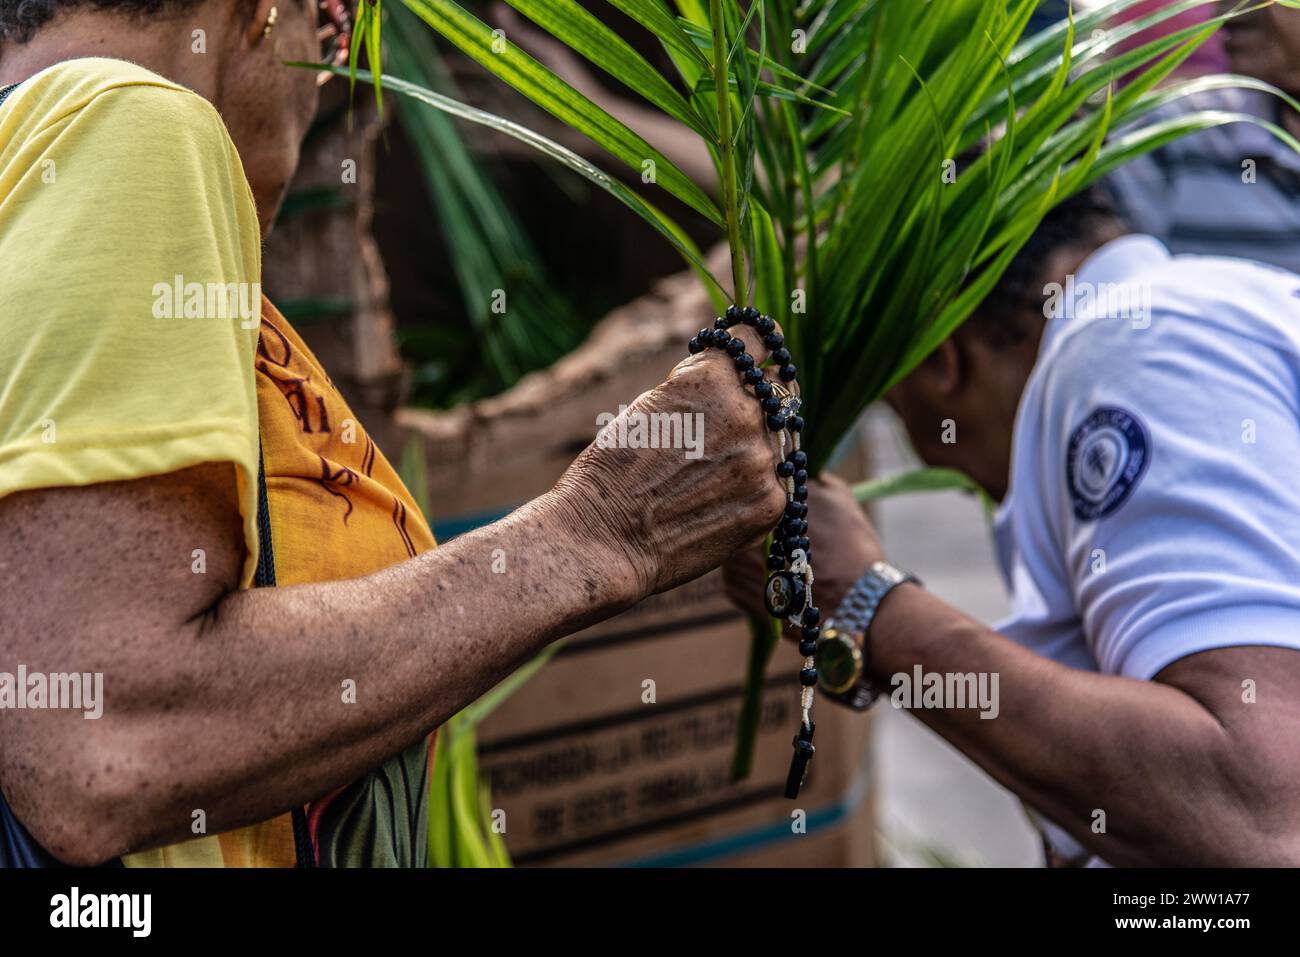 Salvador, Bahia, Brésil - 14 avril 2019 : des gens sont vus avec des branches de palmier pendant la procession du dimanche des Rameaux dans la ville de Salvador, Bahia. Banque D'Images